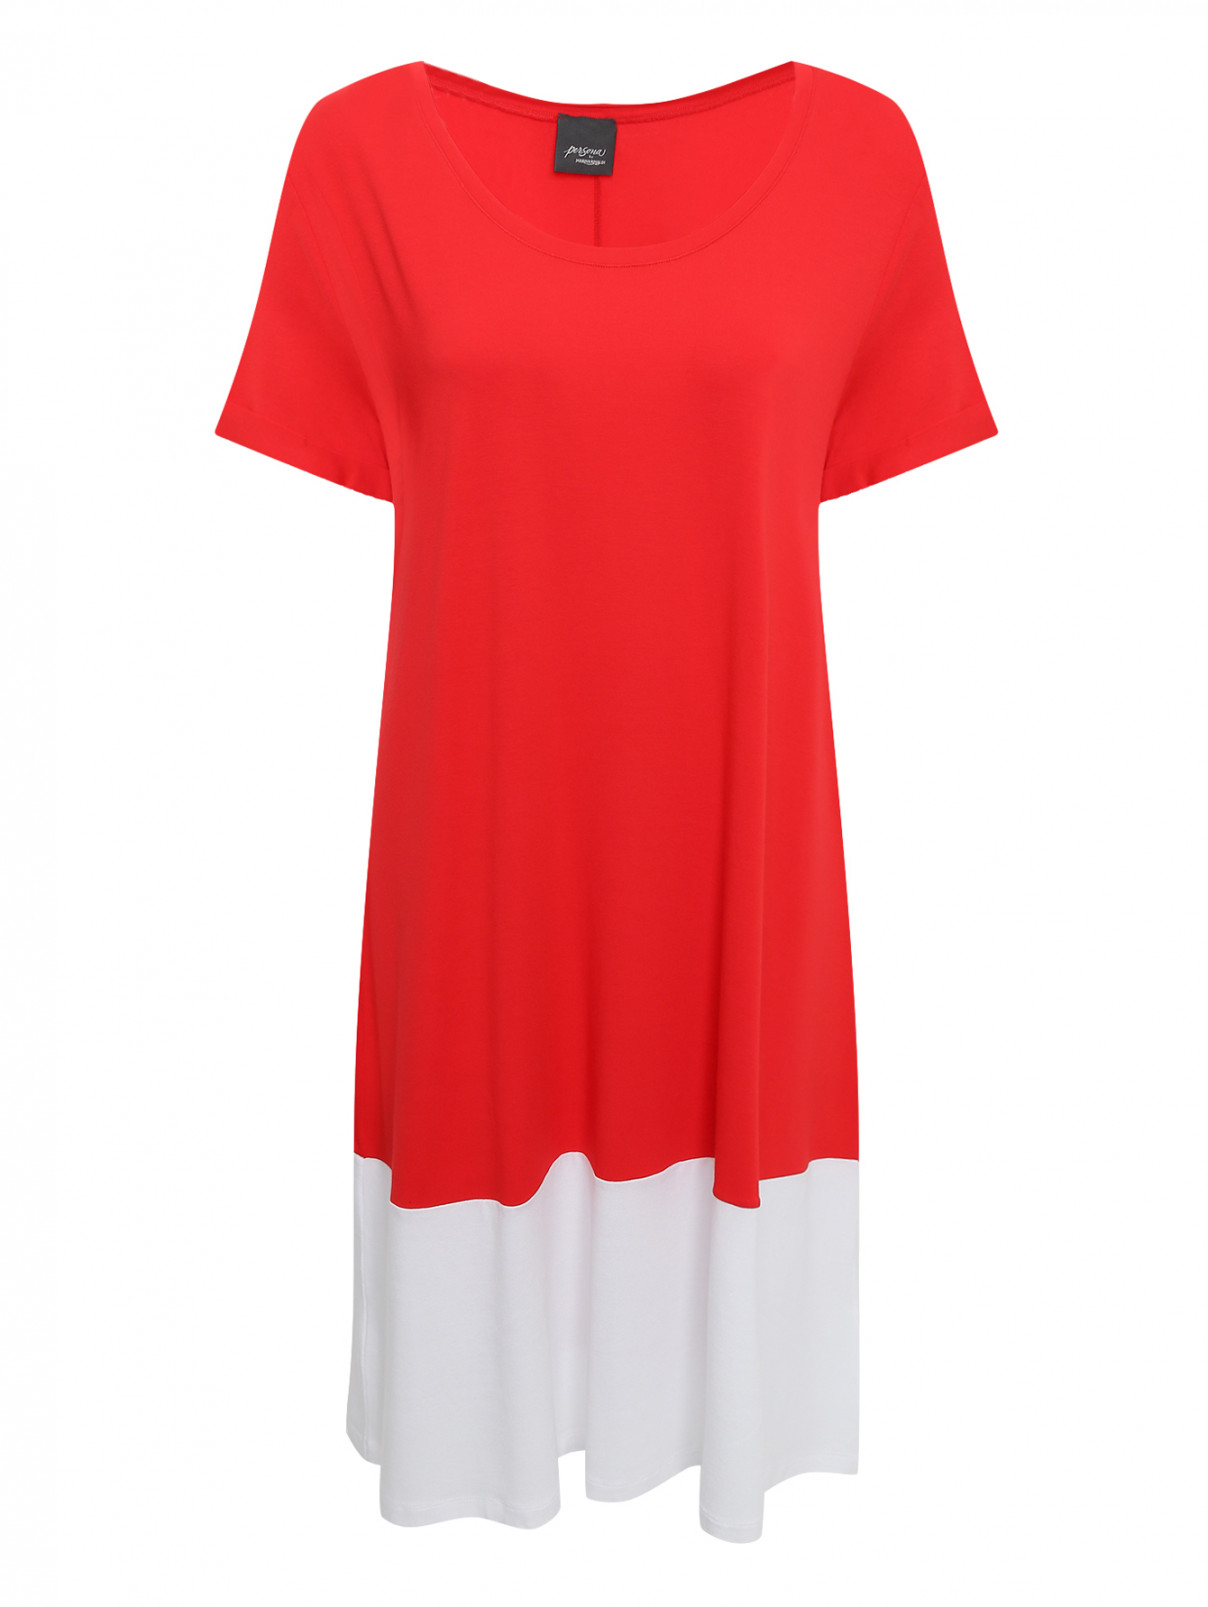 Трикотажное платье с короткими рукавами Persona by Marina Rinaldi  –  Общий вид  – Цвет:  Красный